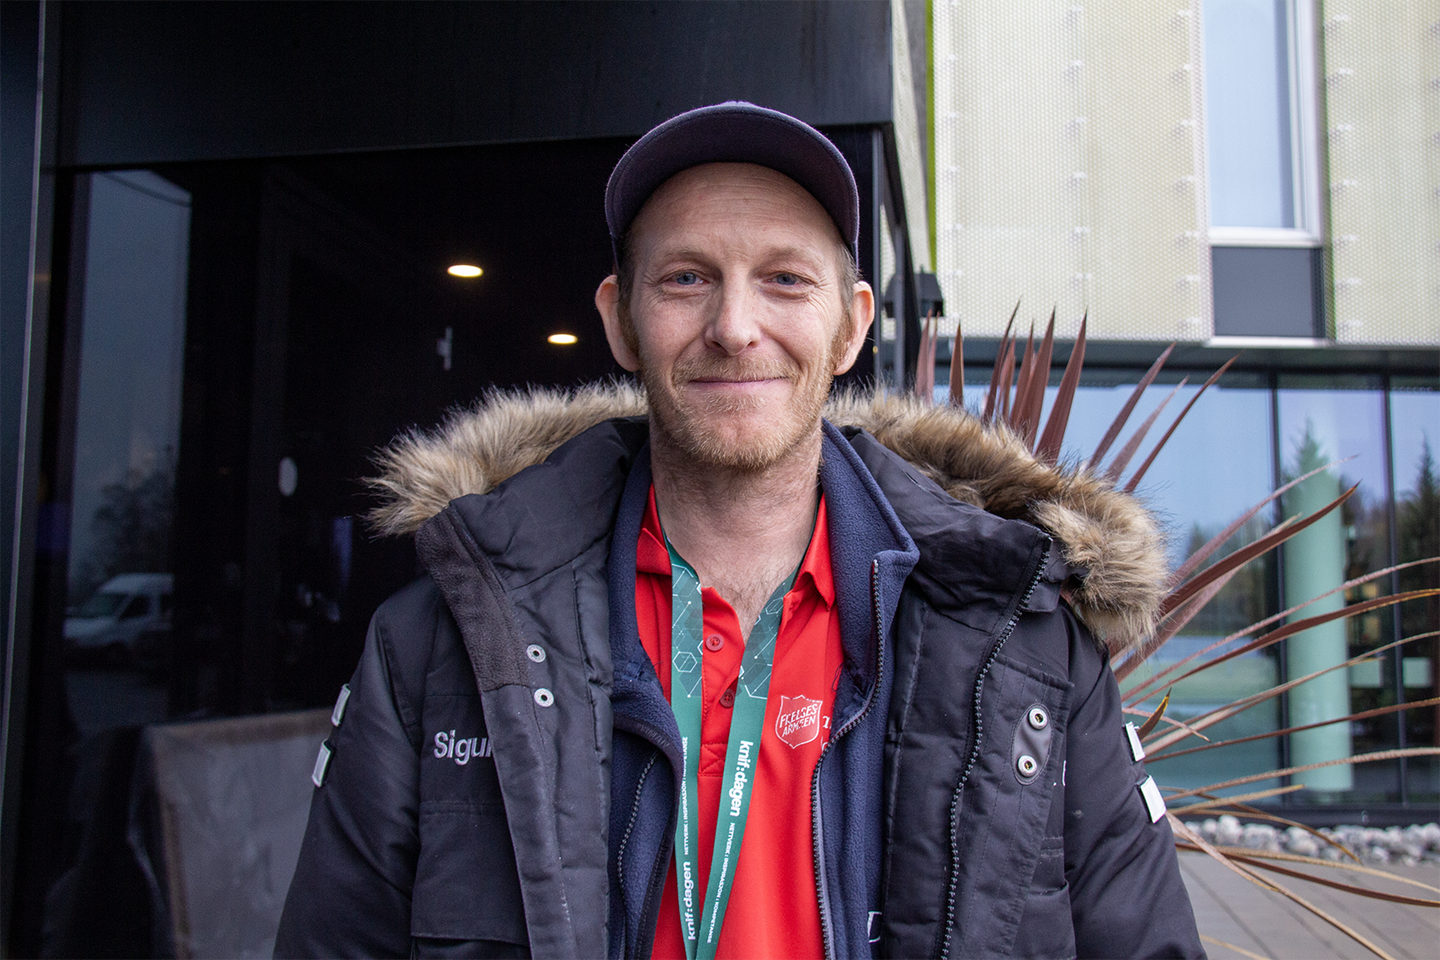 BETYR ALT: Tor Sigurd Larsen har gått fra gatefotballspiller til trener for landslaget og er nå fast ansatt i Frelsesarmeens budtjeneste De ti bud. – Gatefotballen har betydd alt, sier han til KPK.